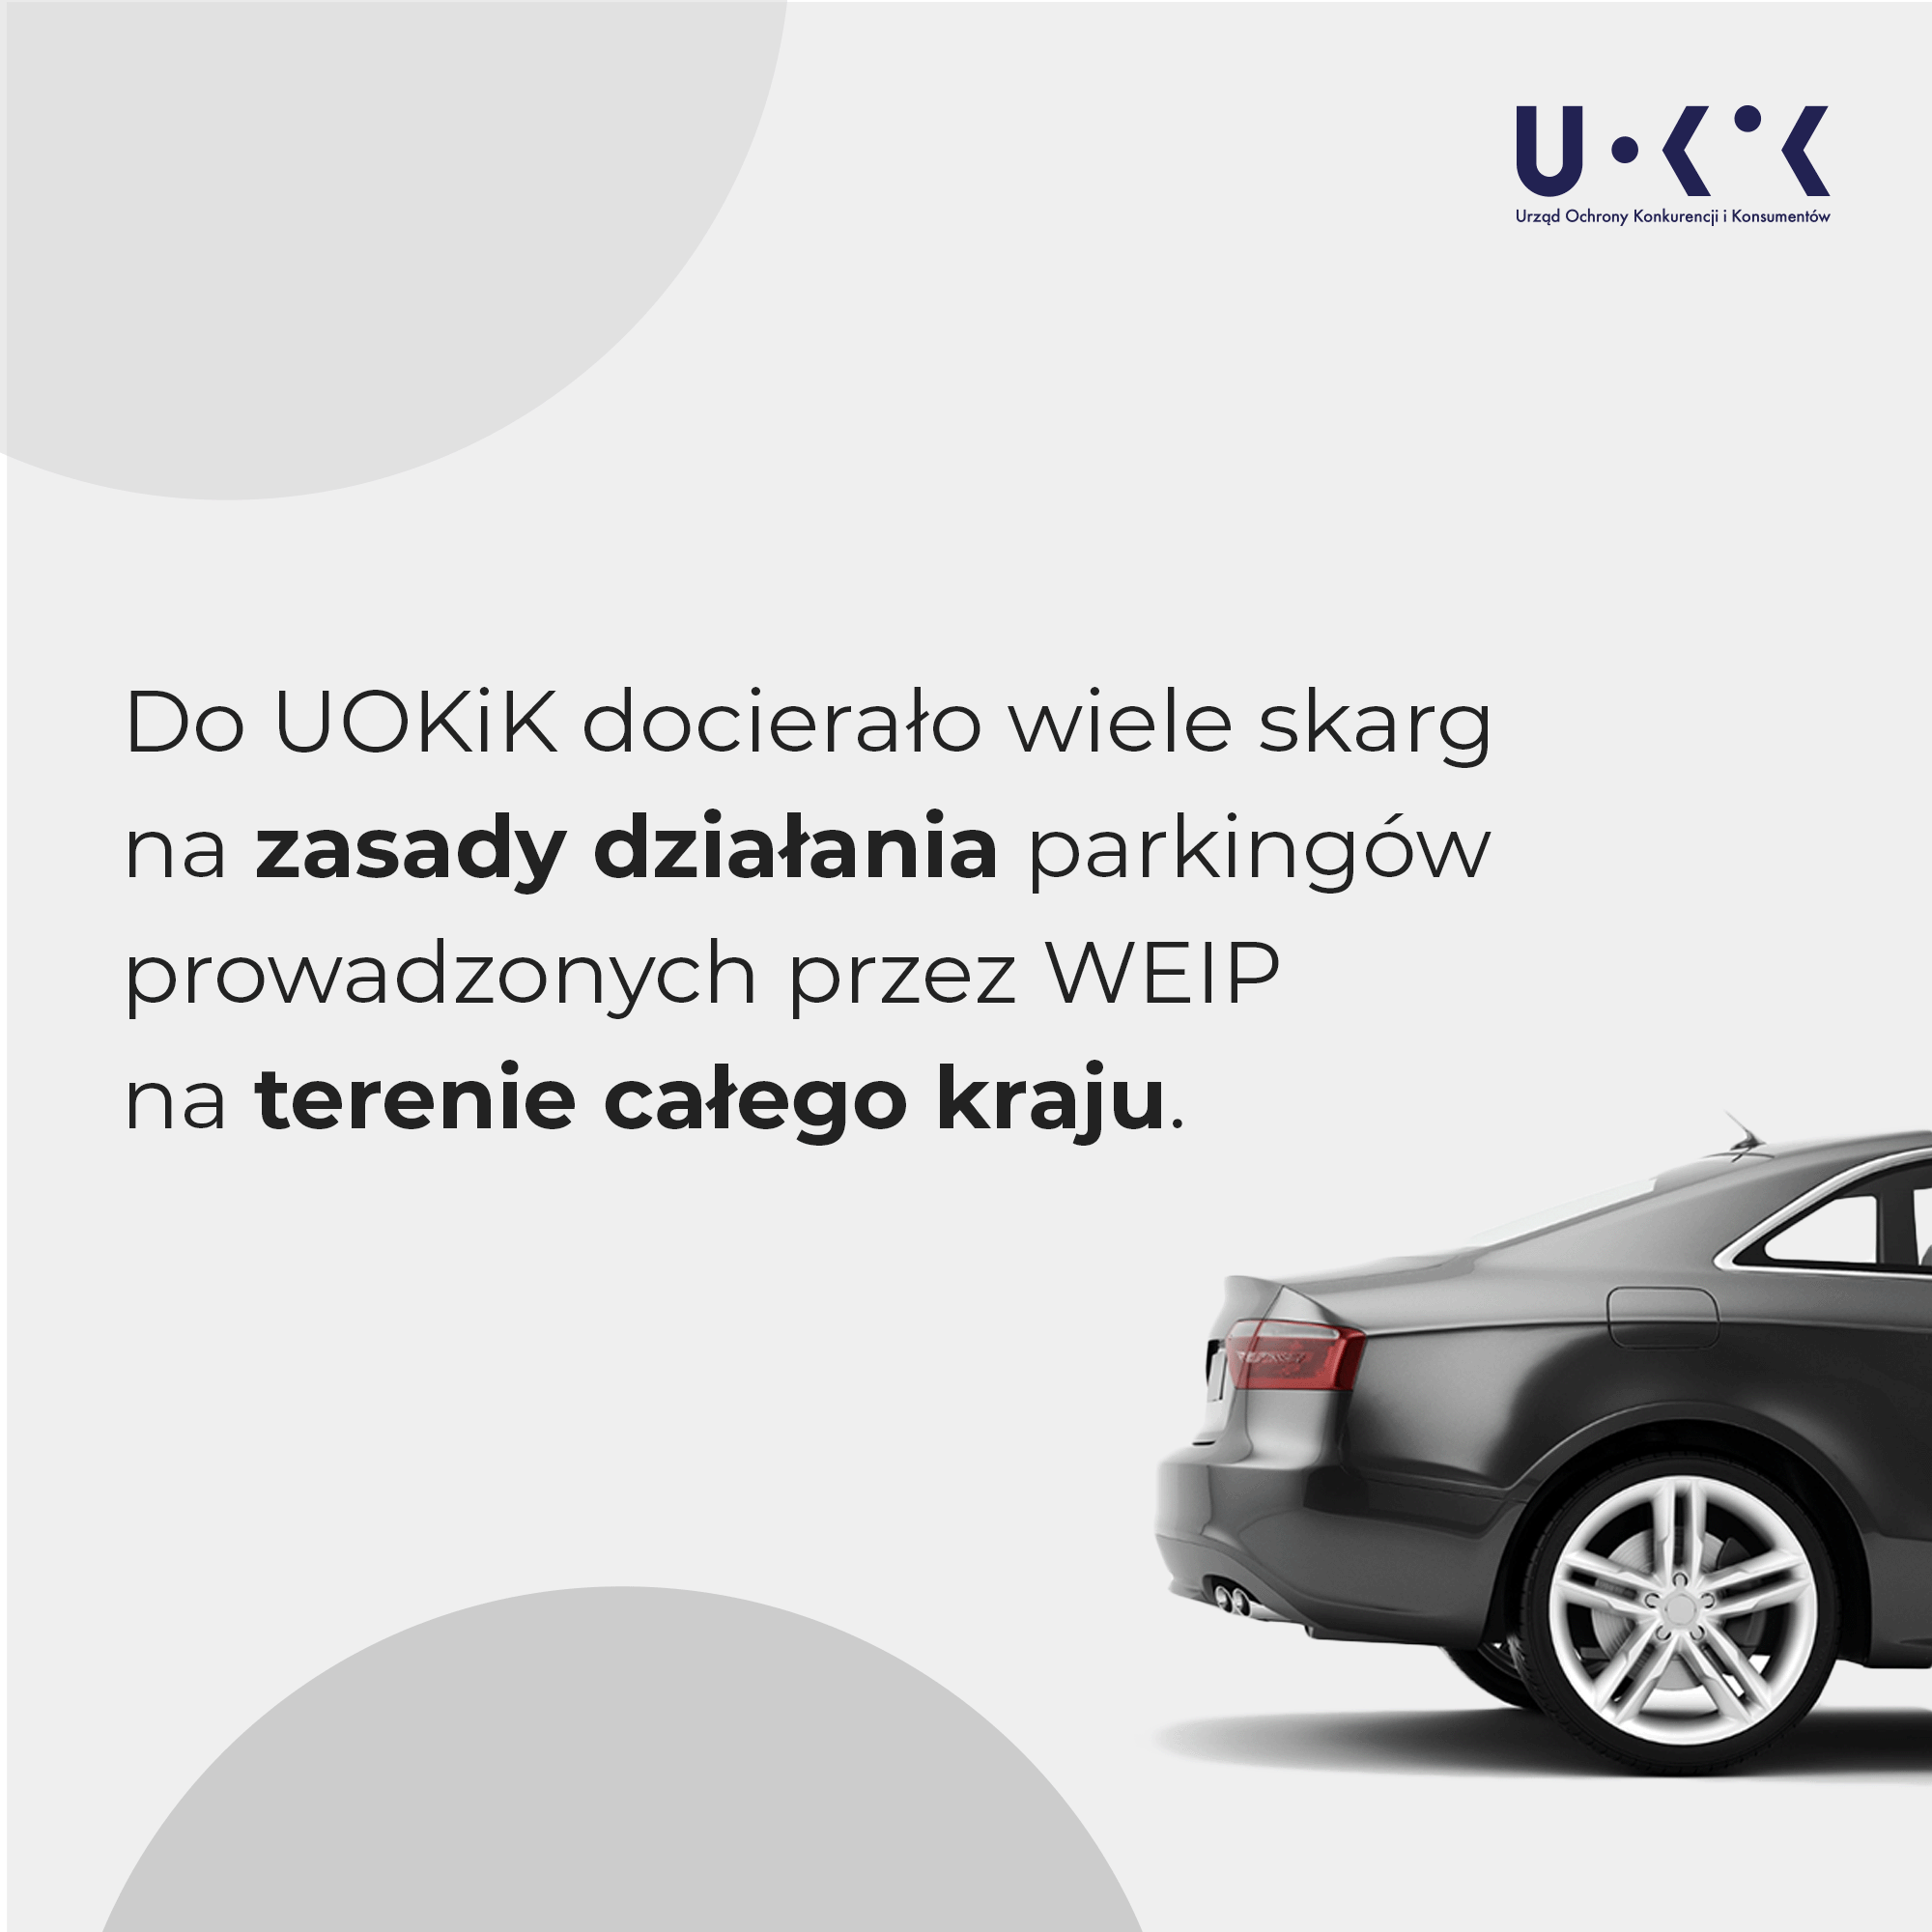 Do UOKiK docierało wiele skarg na zasady działania parkingów prowadzonych przez WEIP na terenie całego kraju.